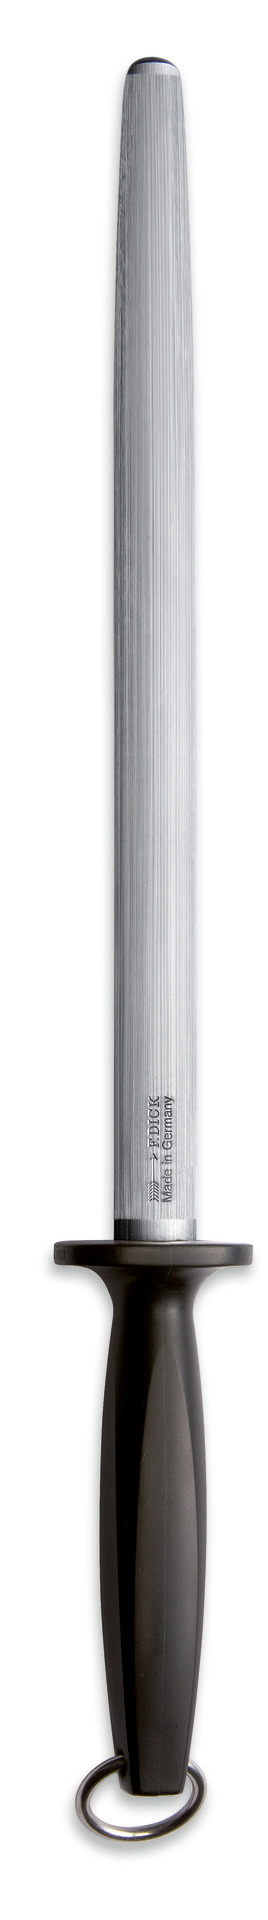 Fleischerwetzstahl oval Klingenlänge 300 mm Standardzug